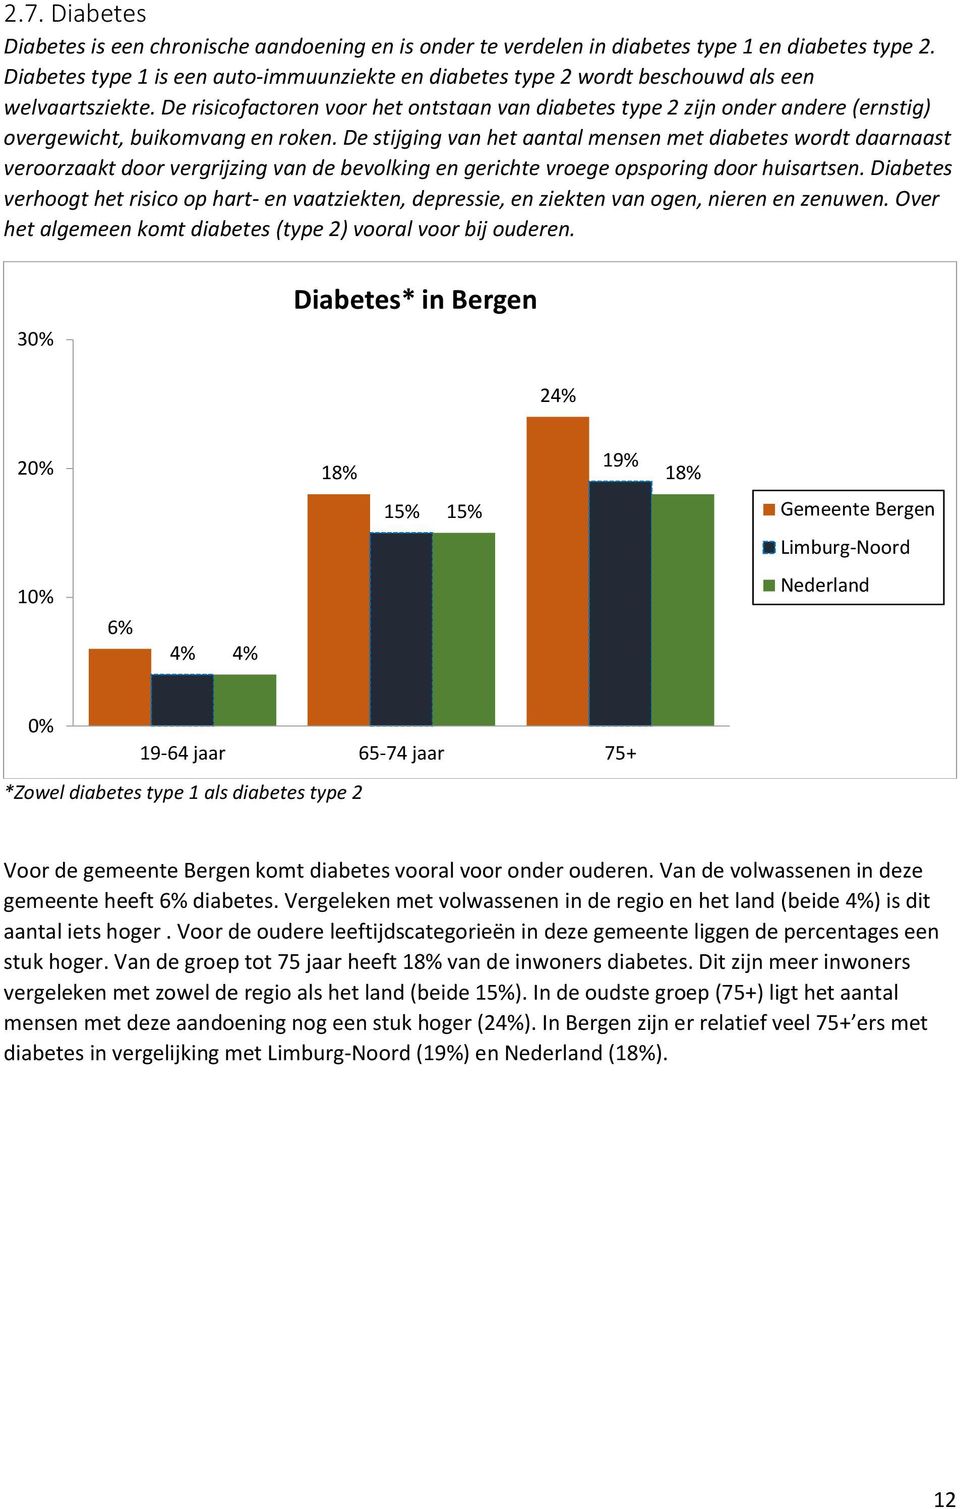 De risicofactoren voor het ontstaan van diabetes type 2 zijn onder andere (ernstig) overgewicht, buikomvang en roken.